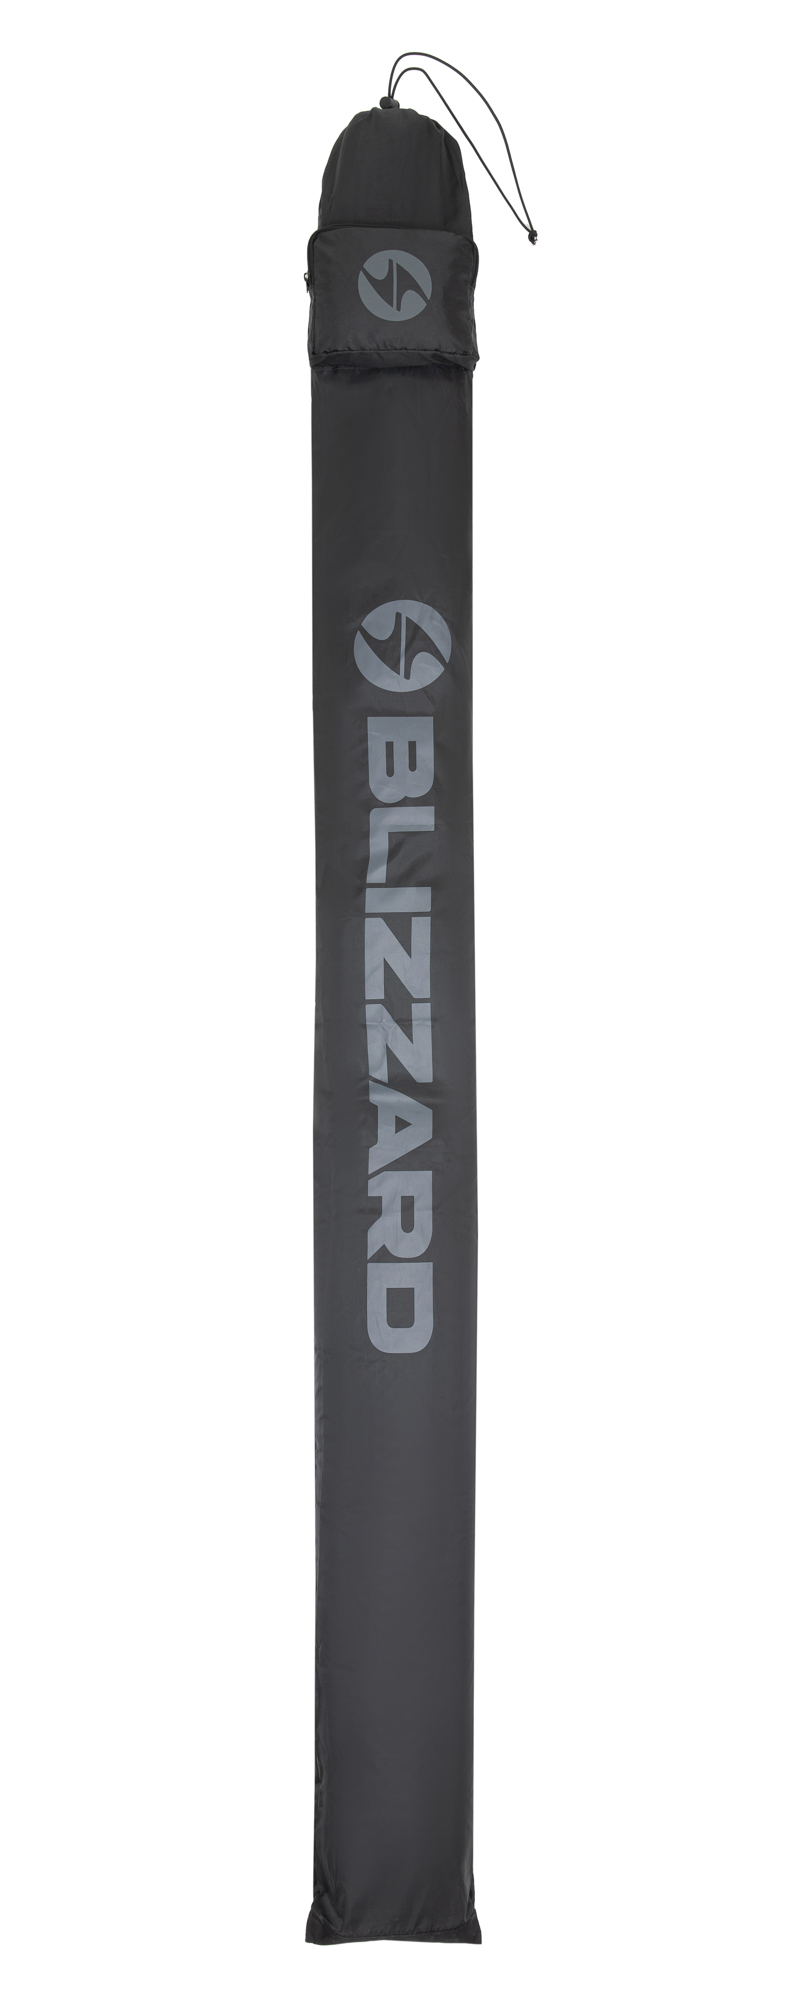 Чехол для беговых лыж BLIZZARD Ski bag for crosscountry 210 cm Black/Silver